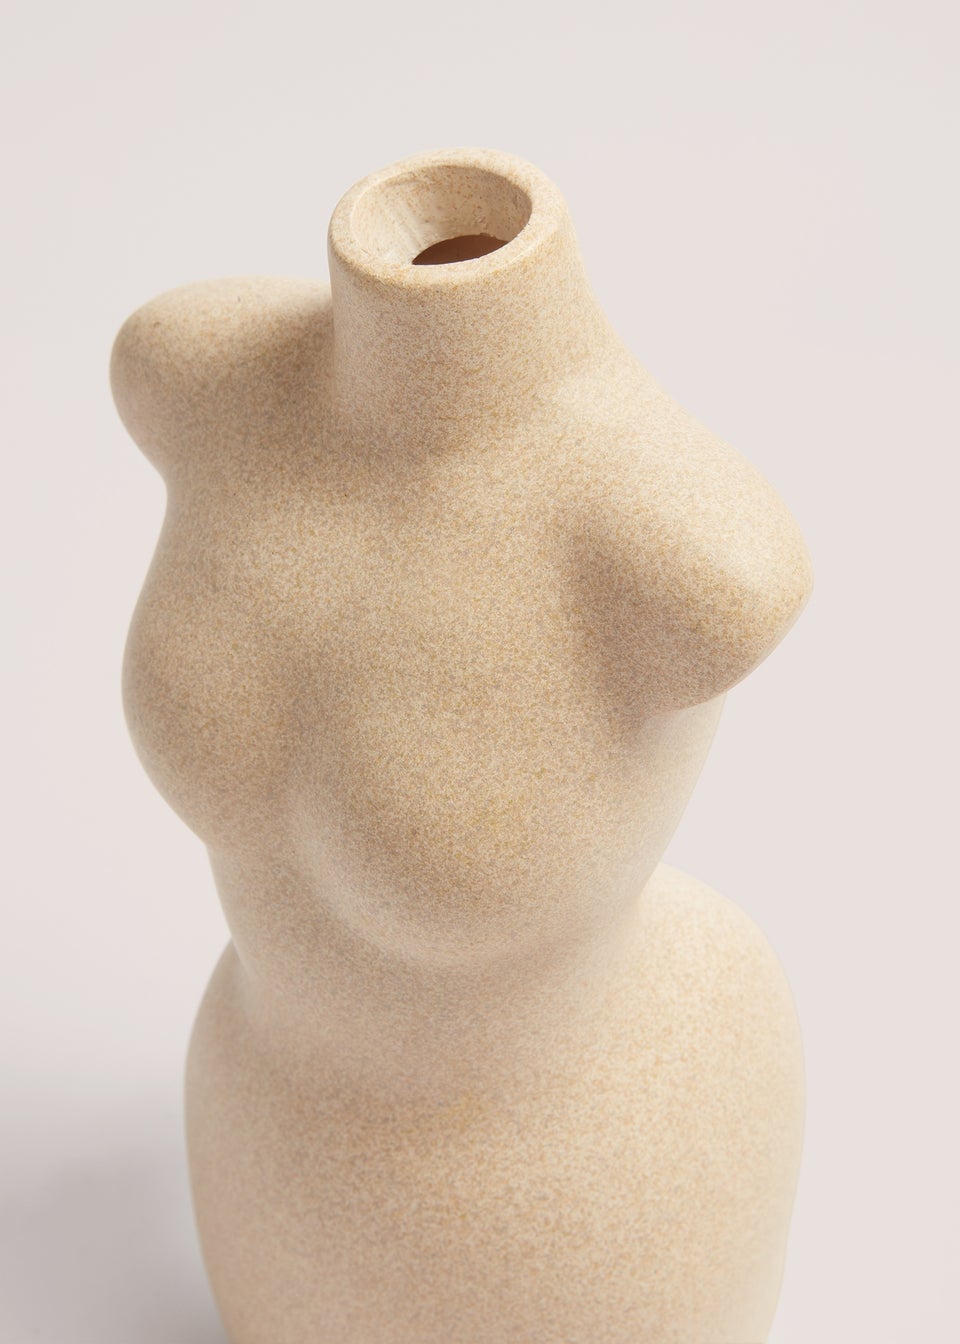 Cream Cabana Body Vase (45cm x 30cm x 29cm)